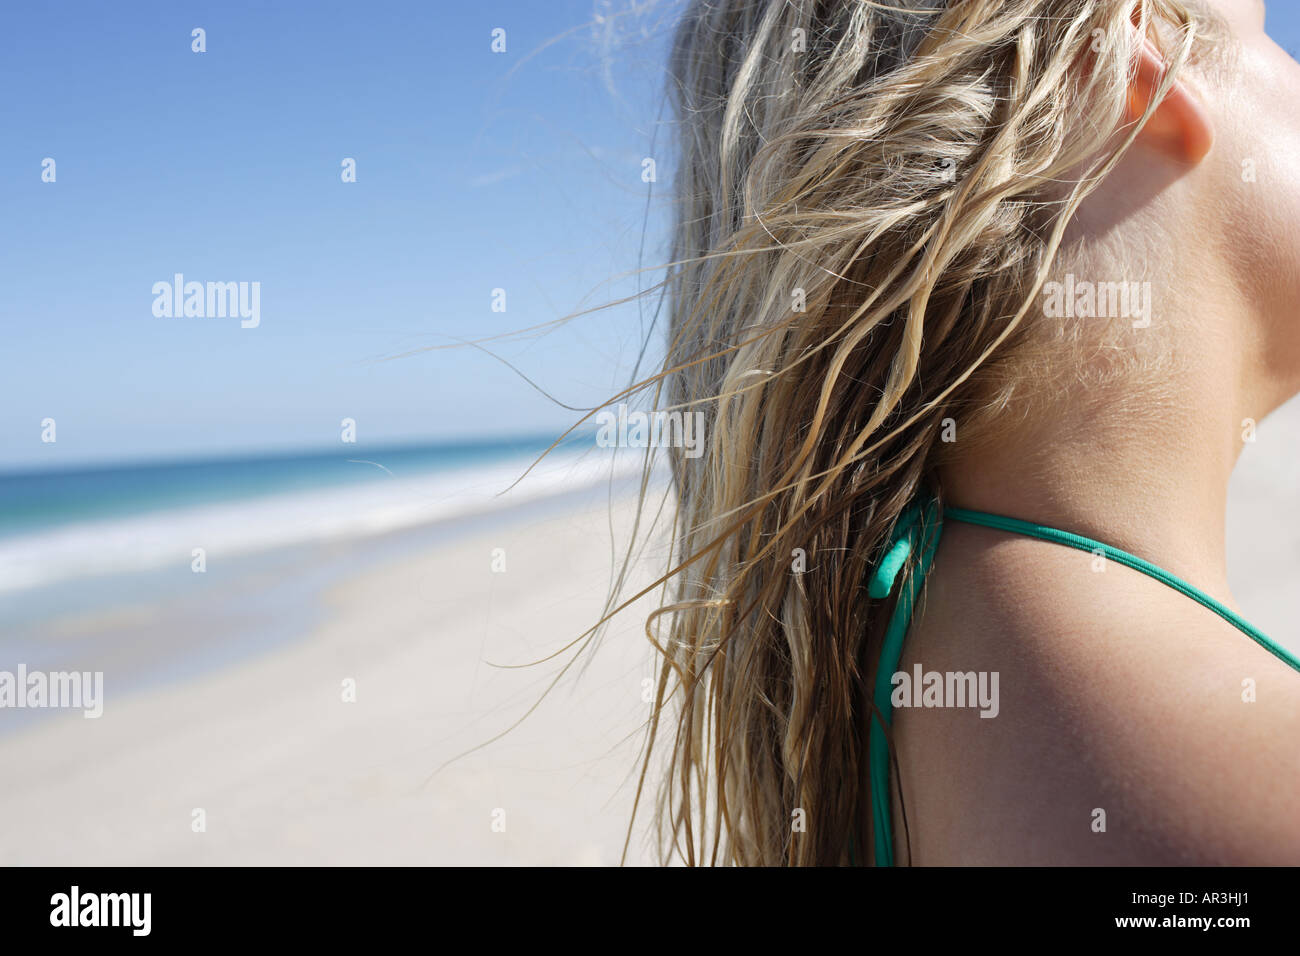 Detail von blondem Haar eine junge Frau am Strand Stockfoto